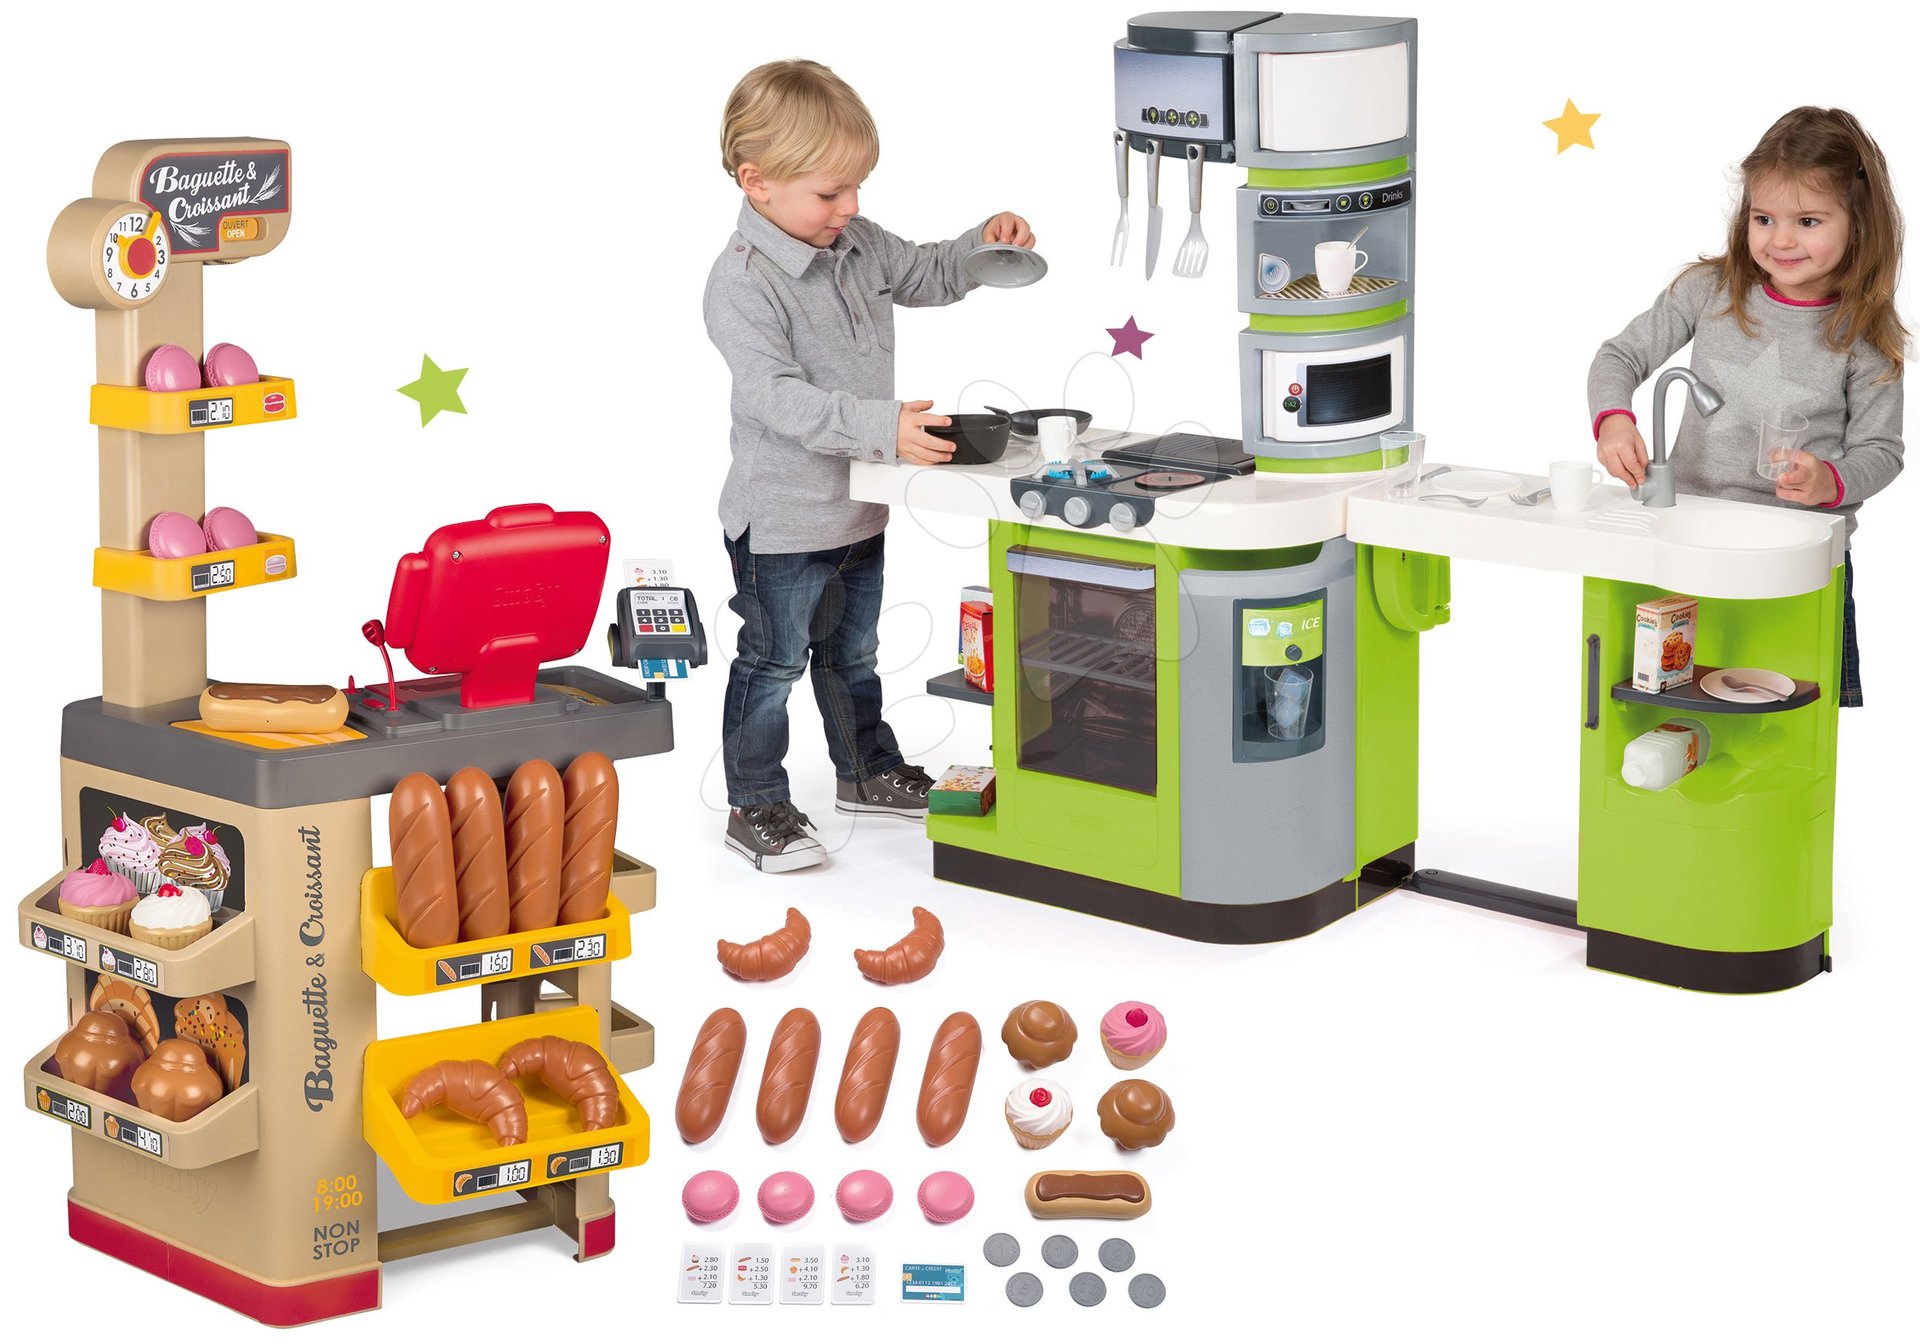 Obchody pre deti sety - Set pekáreň s koláčmi Baguette&Croissant Bakery Smoby s elektronickou pokladňou a kuchynka CookMaster s ľadom a opečenými potravinami